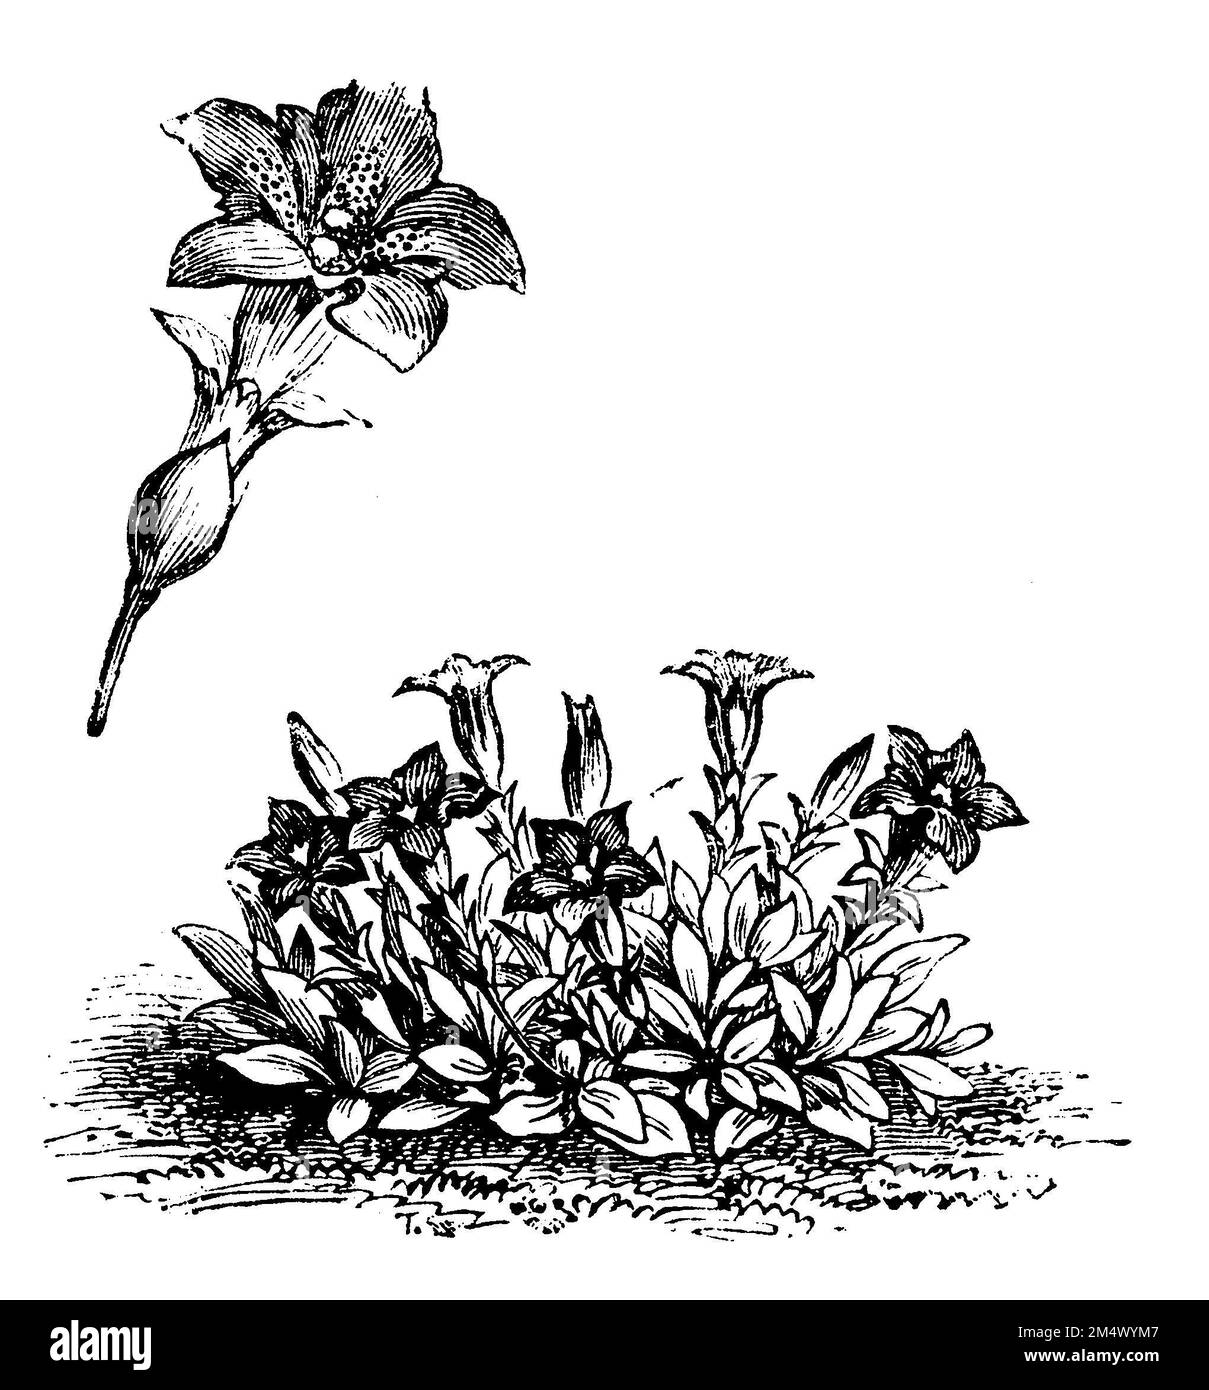 Stemless Gentian, Gentiana acaulis, anonym (livre botanique, 1888), Kochscher Enzian, Acaule de Gentiane Banque D'Images